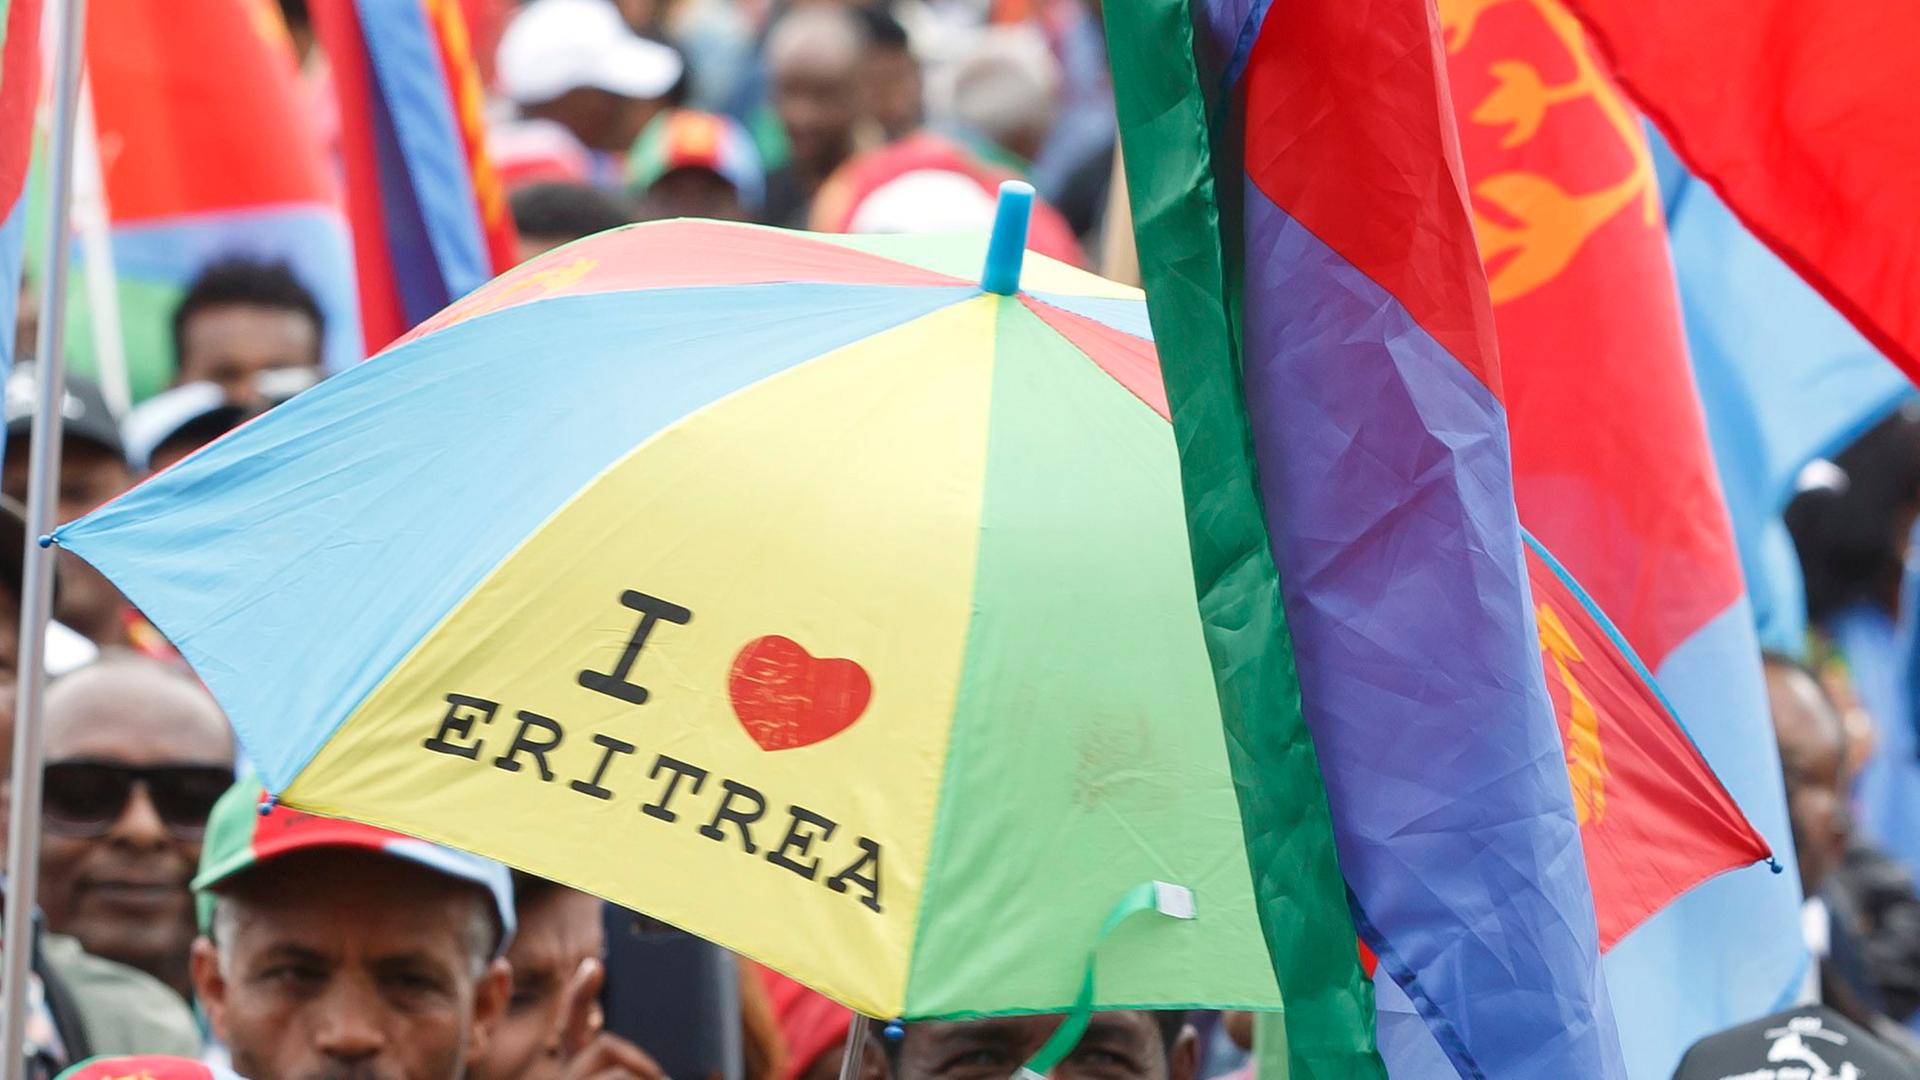 EritreaFestival in Gießen darf stattfinden Gericht kassiert Verbot